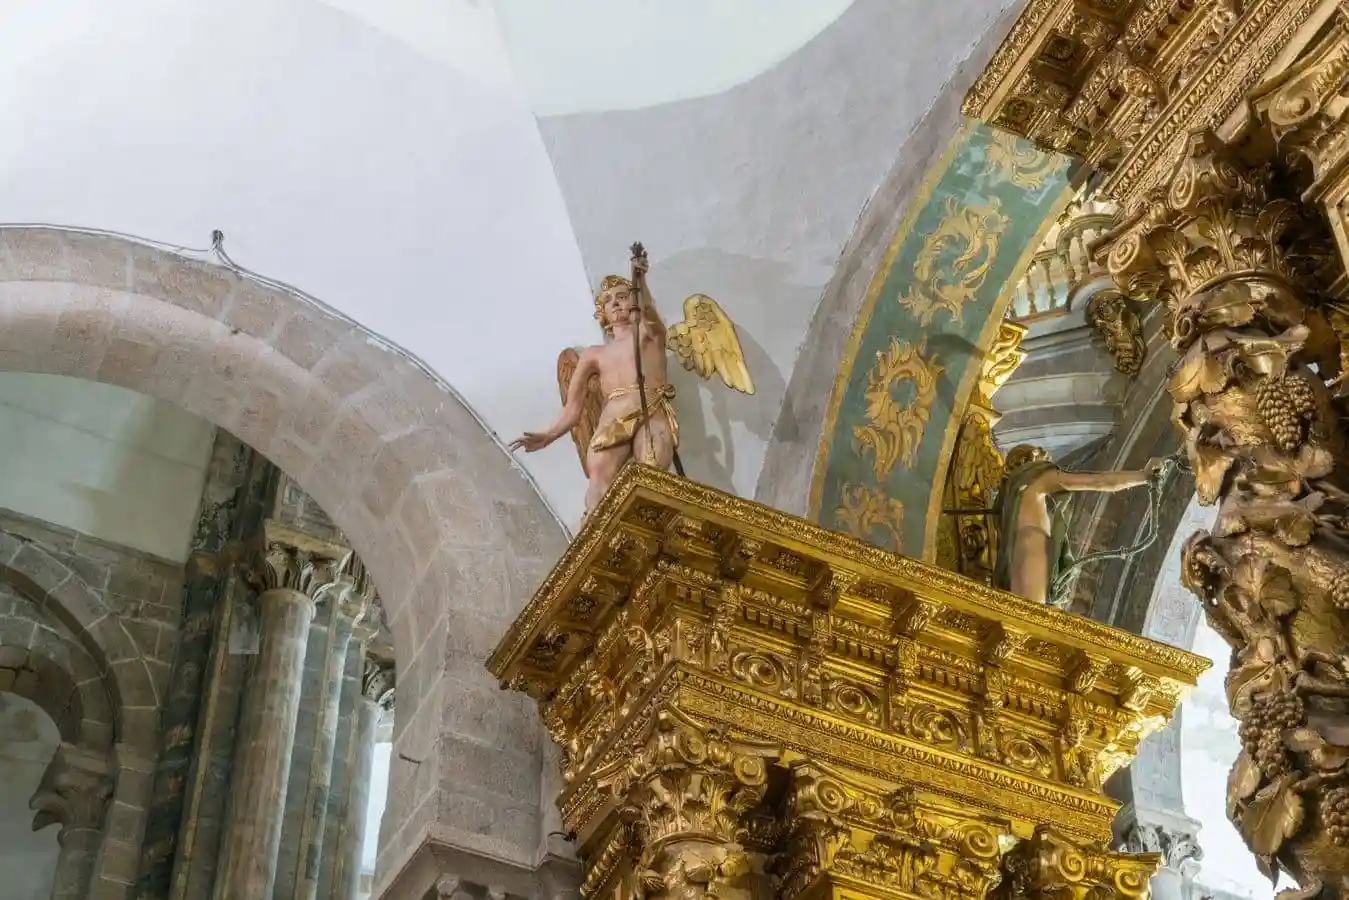 Detalle de uno de los ángeles sobre las columnas salomónicas del cierre de la capilla mayor